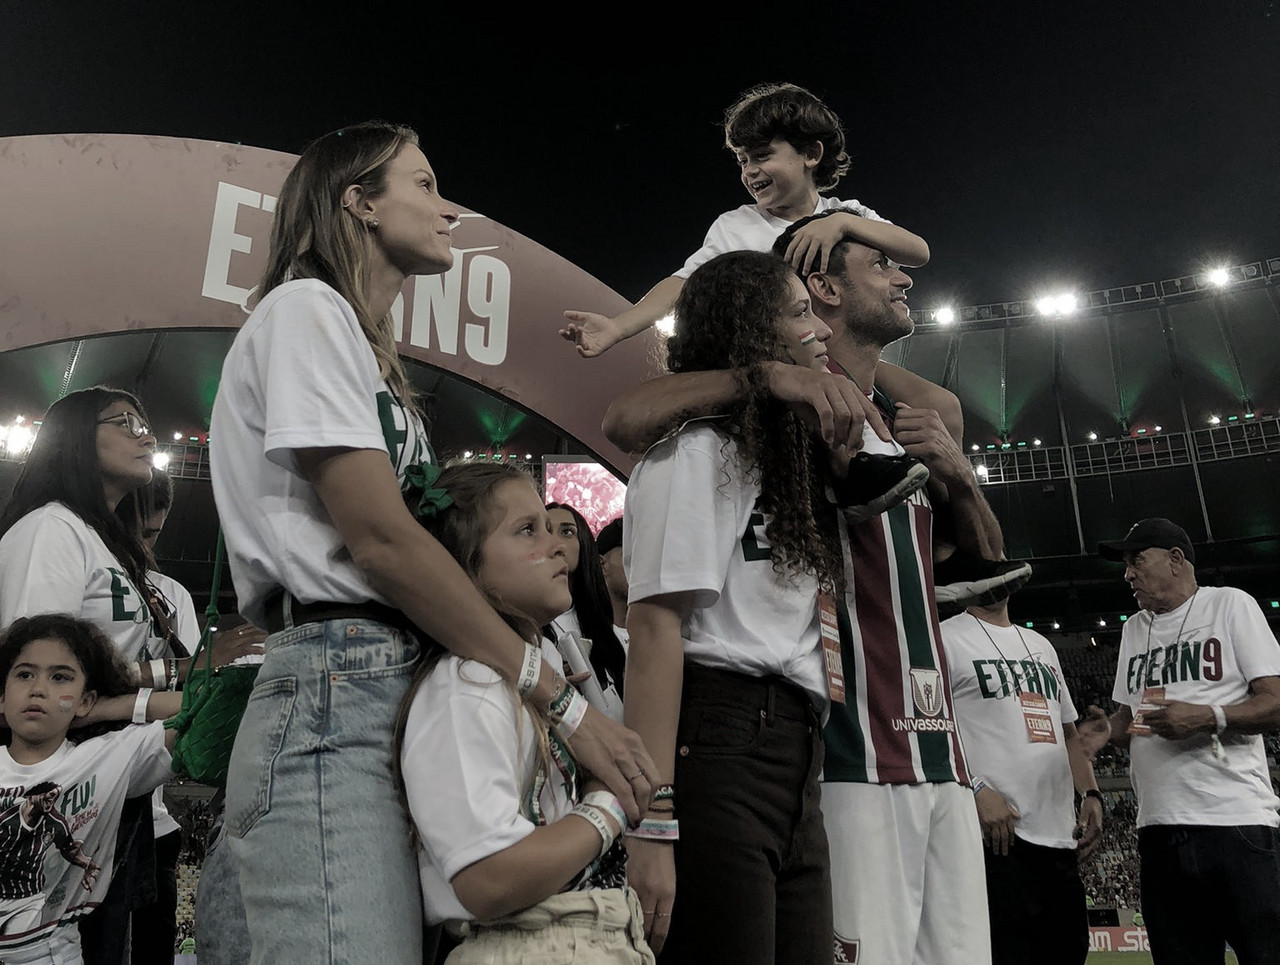 Fred se despede e agradece torcida do Fluminense: "Serei eternamente grato"